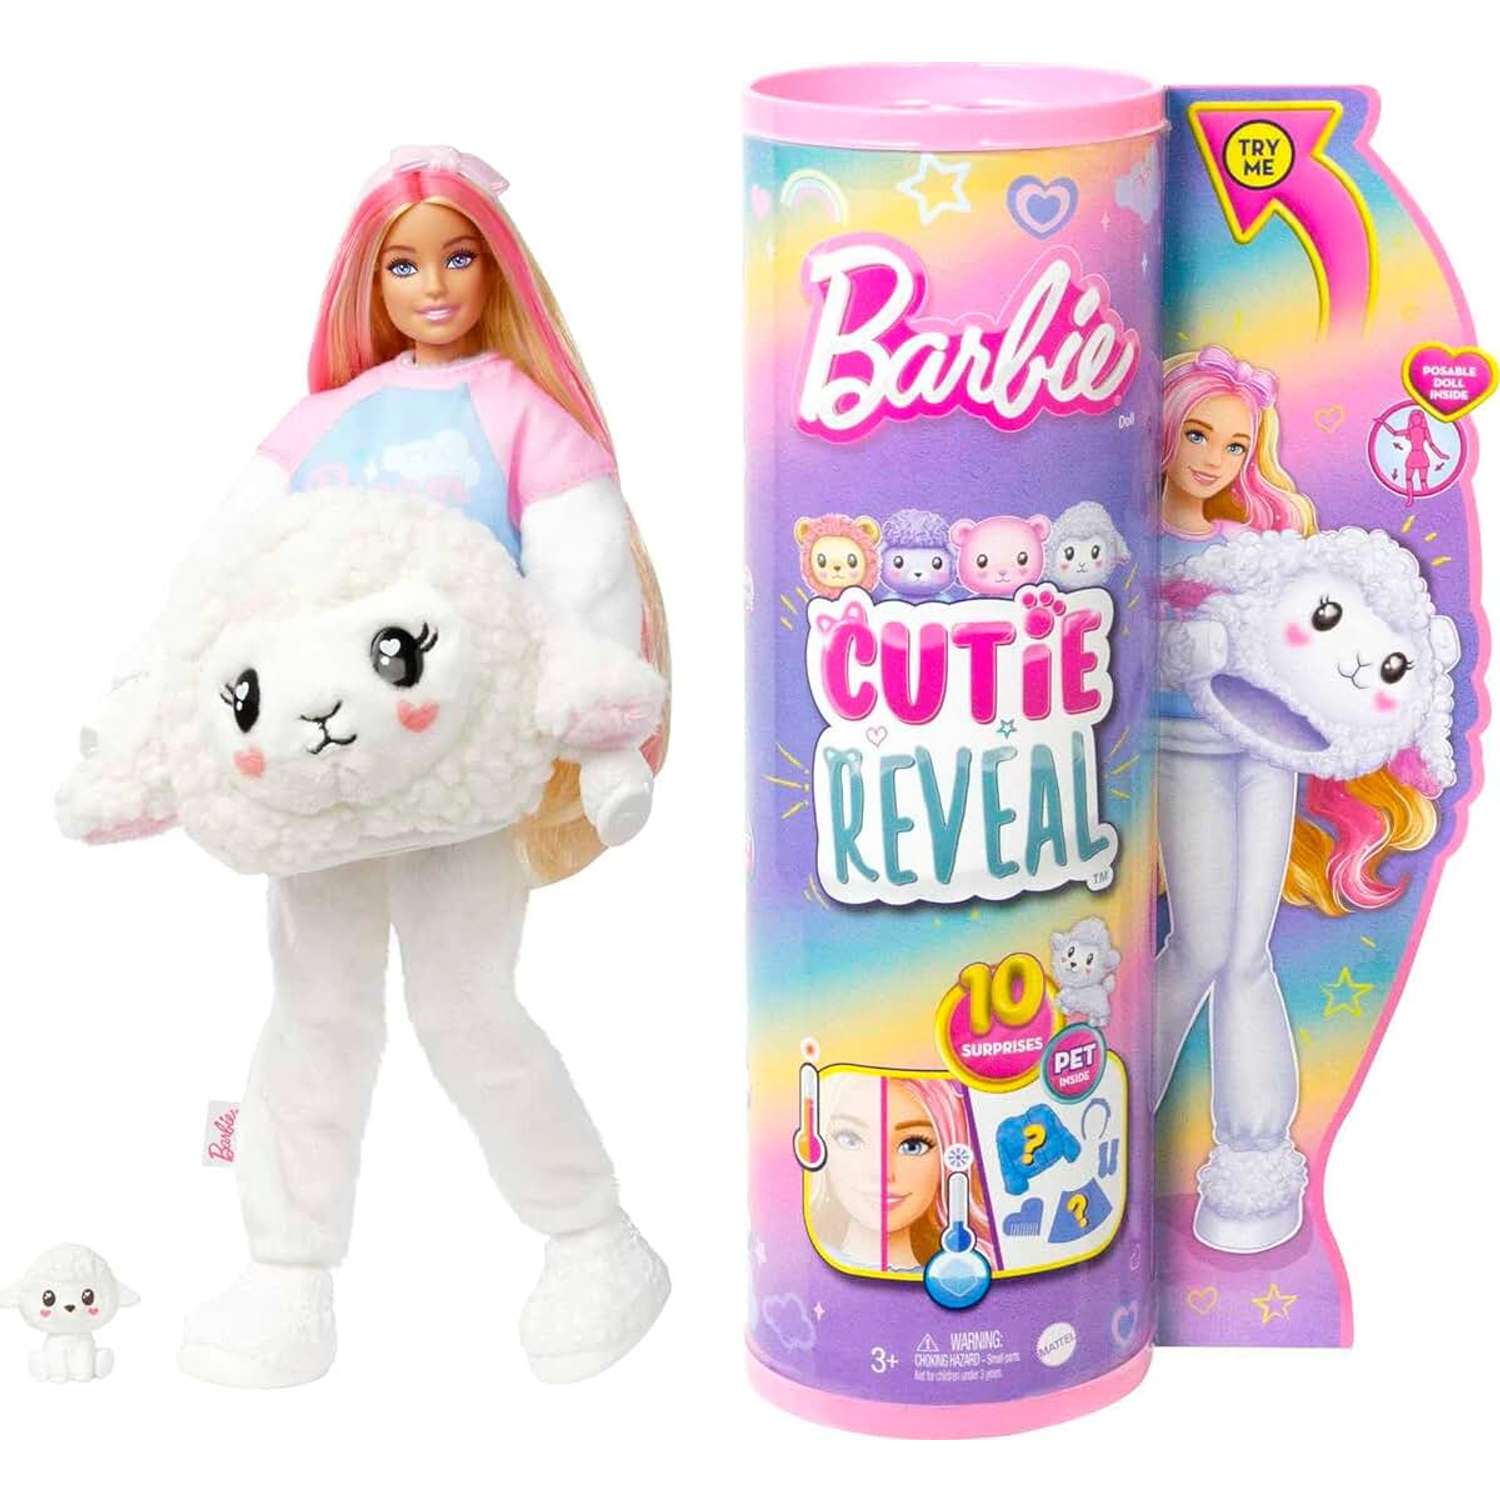 Купить игрушки и товары с Барби (Barbie) в магазинах Hamleys.